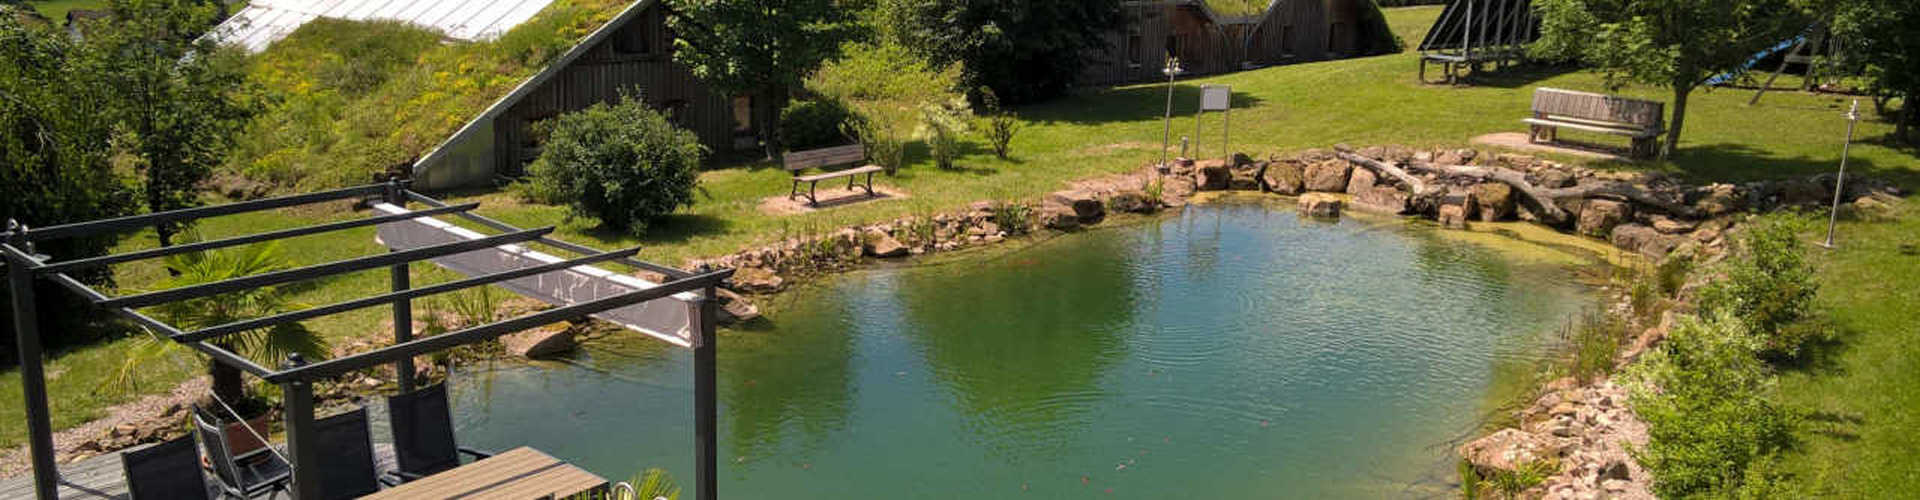 Teich auf dem Gelände des Musterhausparks